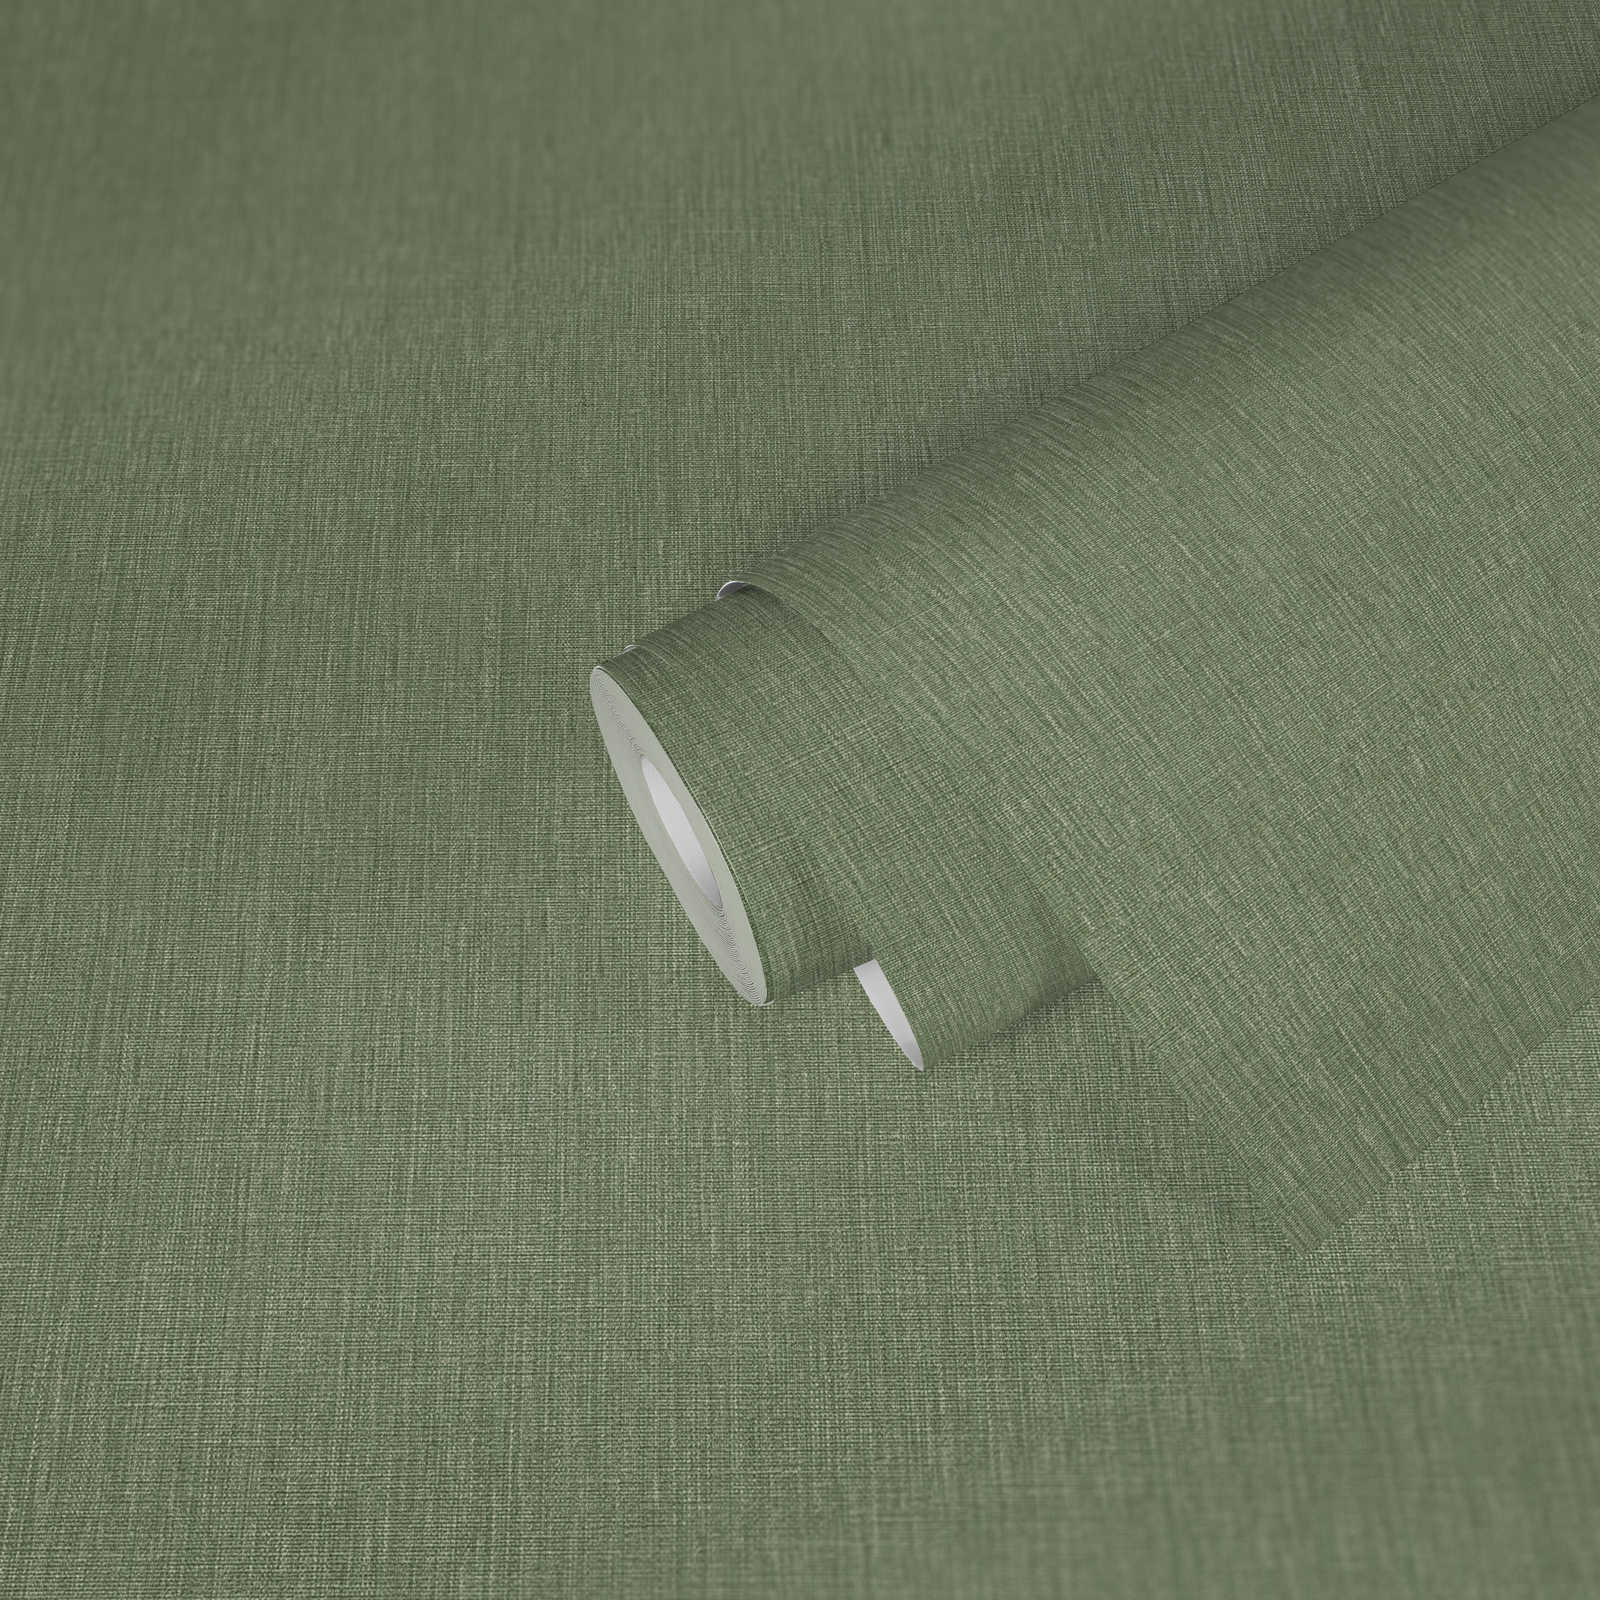             Vliesbehang met lichte structuur in textiellook - groen
        